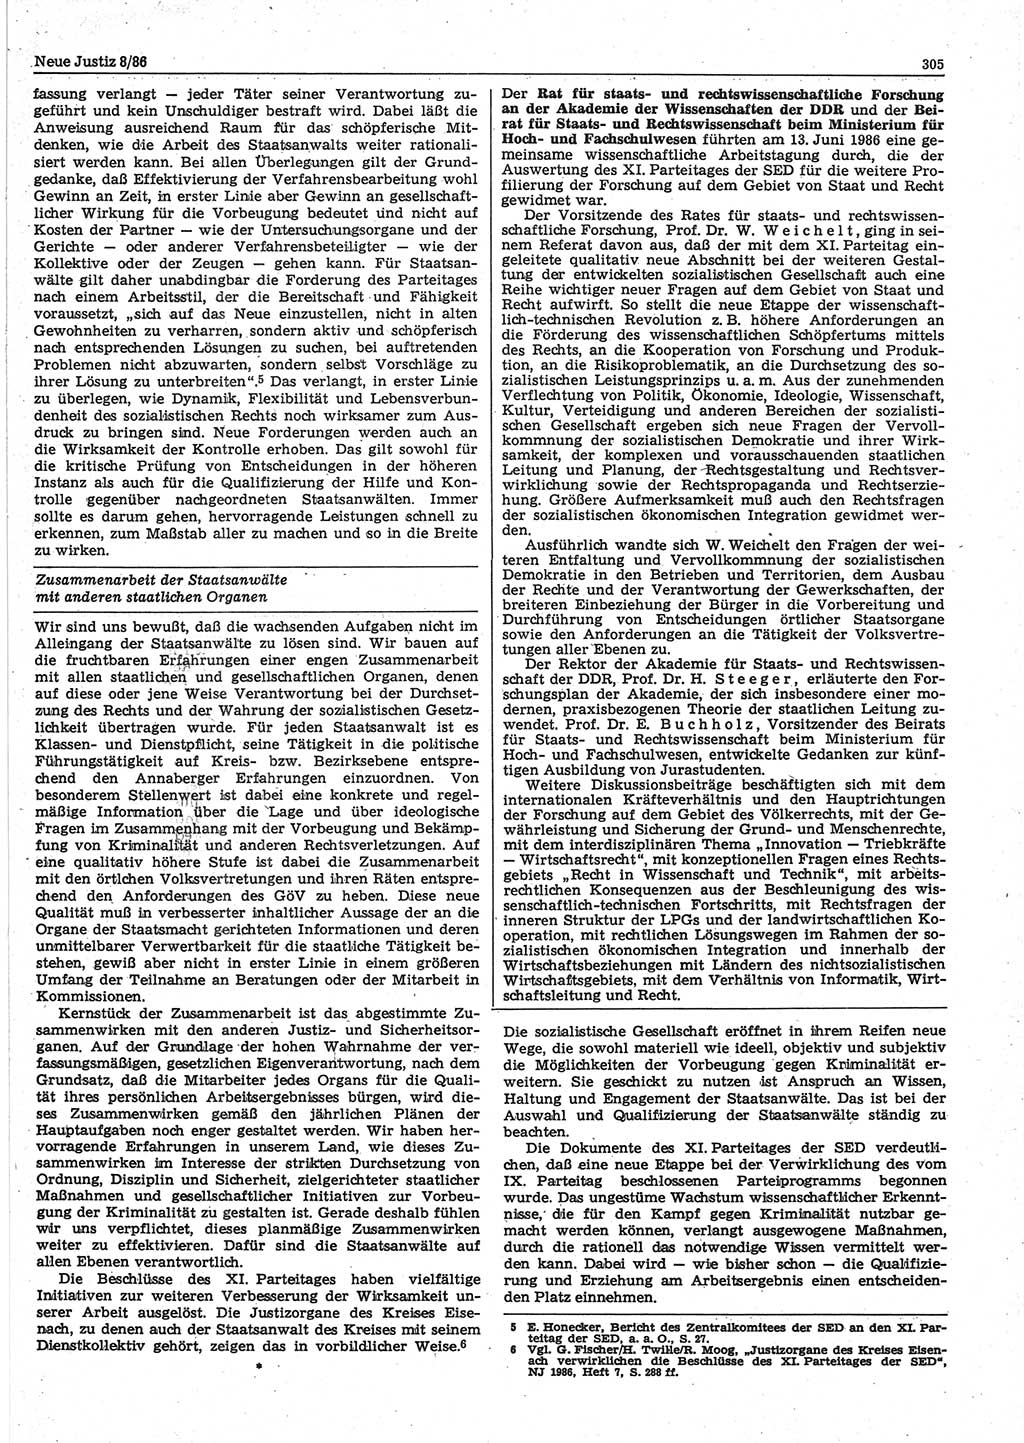 Neue Justiz (NJ), Zeitschrift für sozialistisches Recht und Gesetzlichkeit [Deutsche Demokratische Republik (DDR)], 40. Jahrgang 1986, Seite 305 (NJ DDR 1986, S. 305)